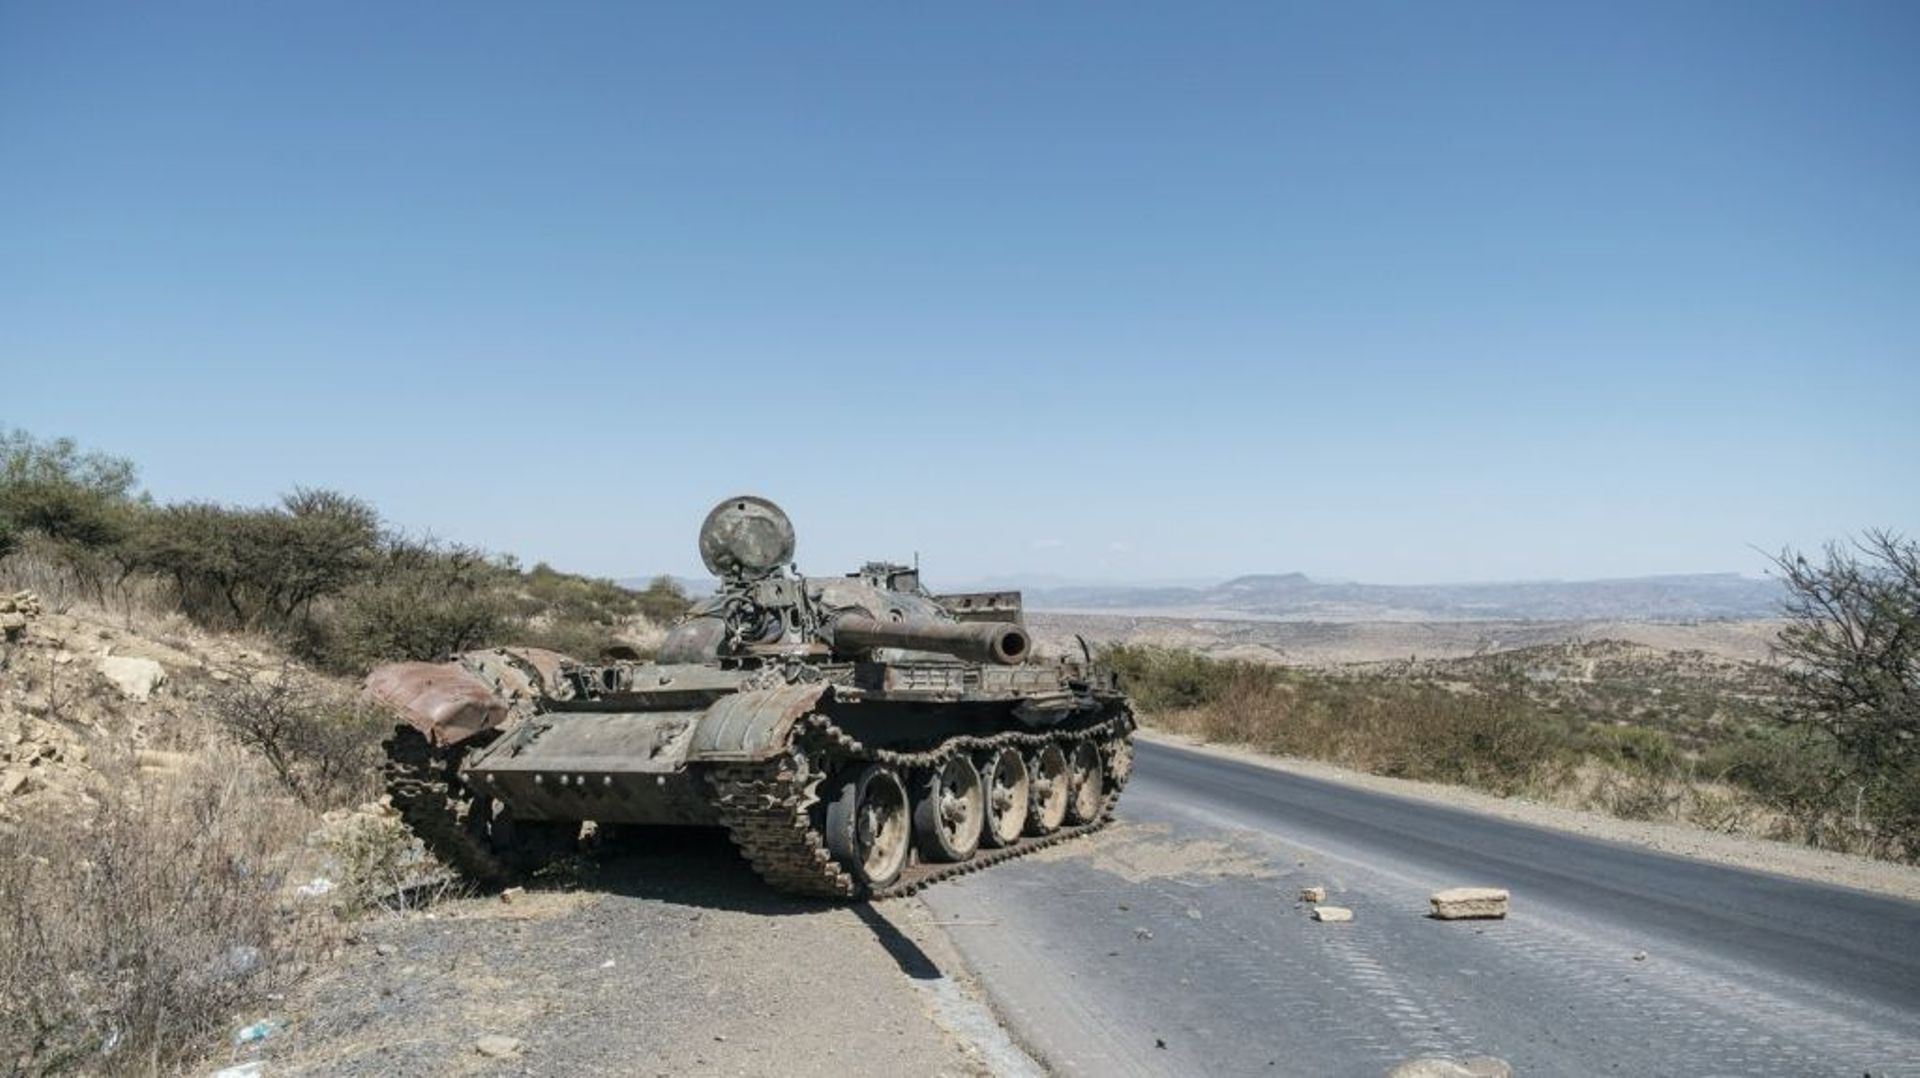 Un char abandonné sur une route du Tigré, une région du nord de l'Ethiopie en proie à la guerre, le 26 février 2021